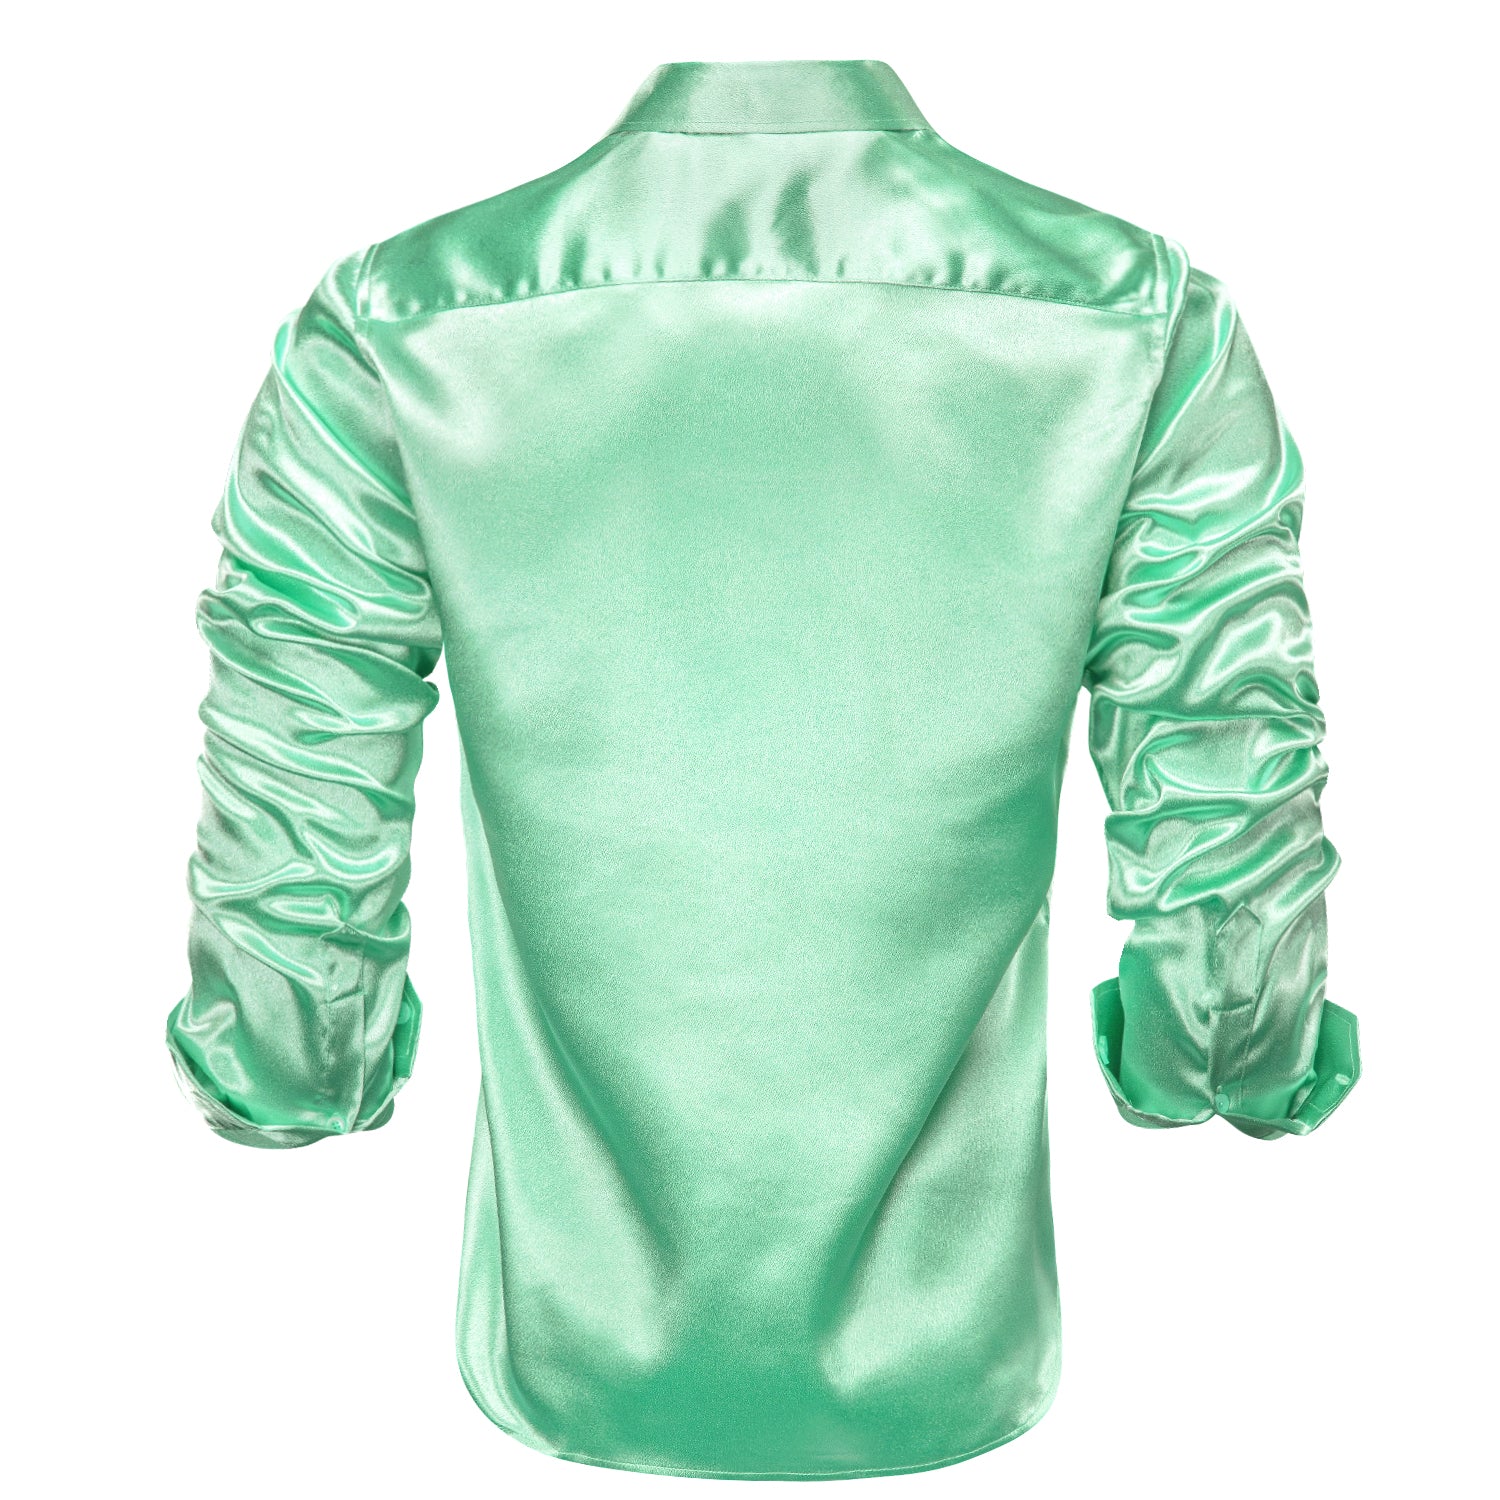 Mint Green Satin Silk Men's Long Sleeve Shirt